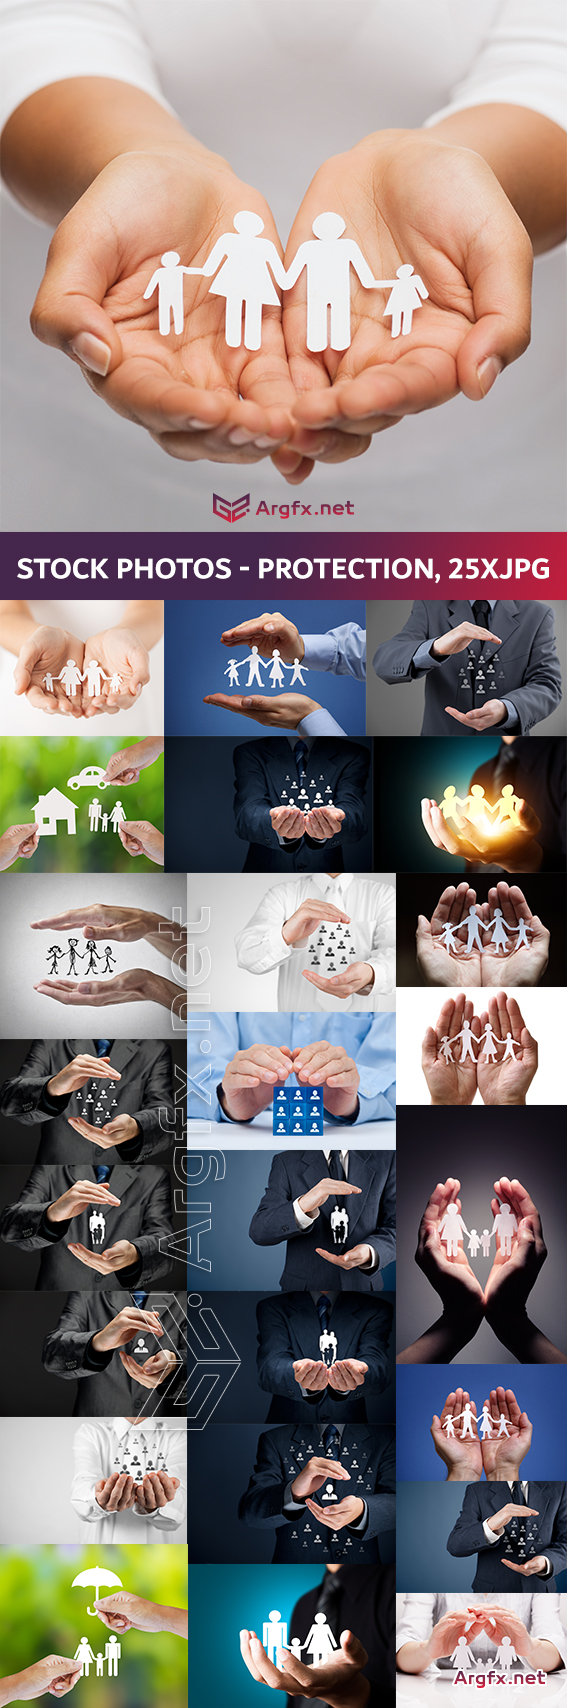 Stock Photos - Protection, 25xJPG